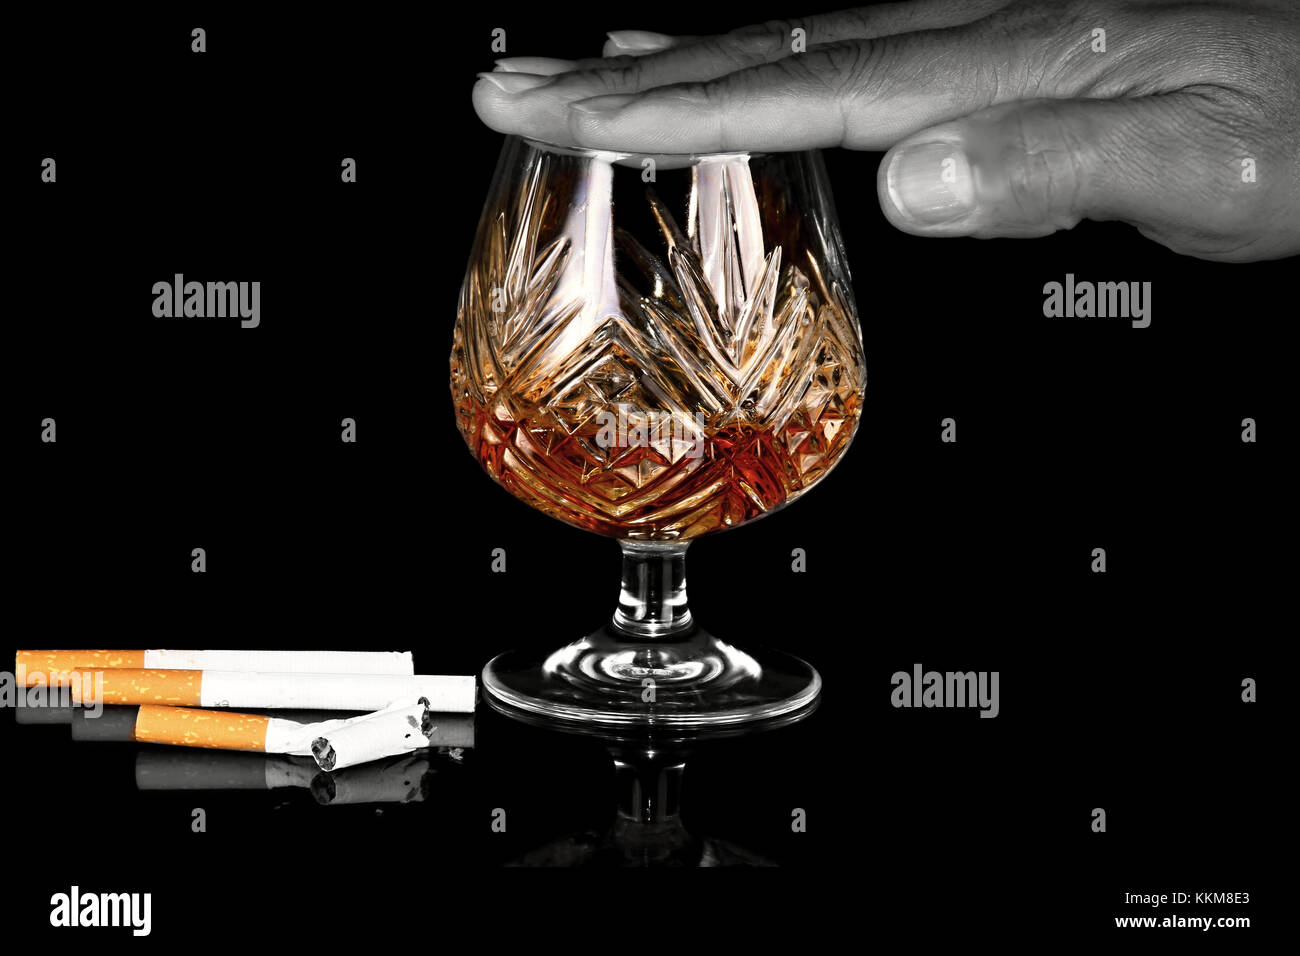 Dur dans les années à nouveau Arrêter et Arrêter de fumer et boire Banque D'Images